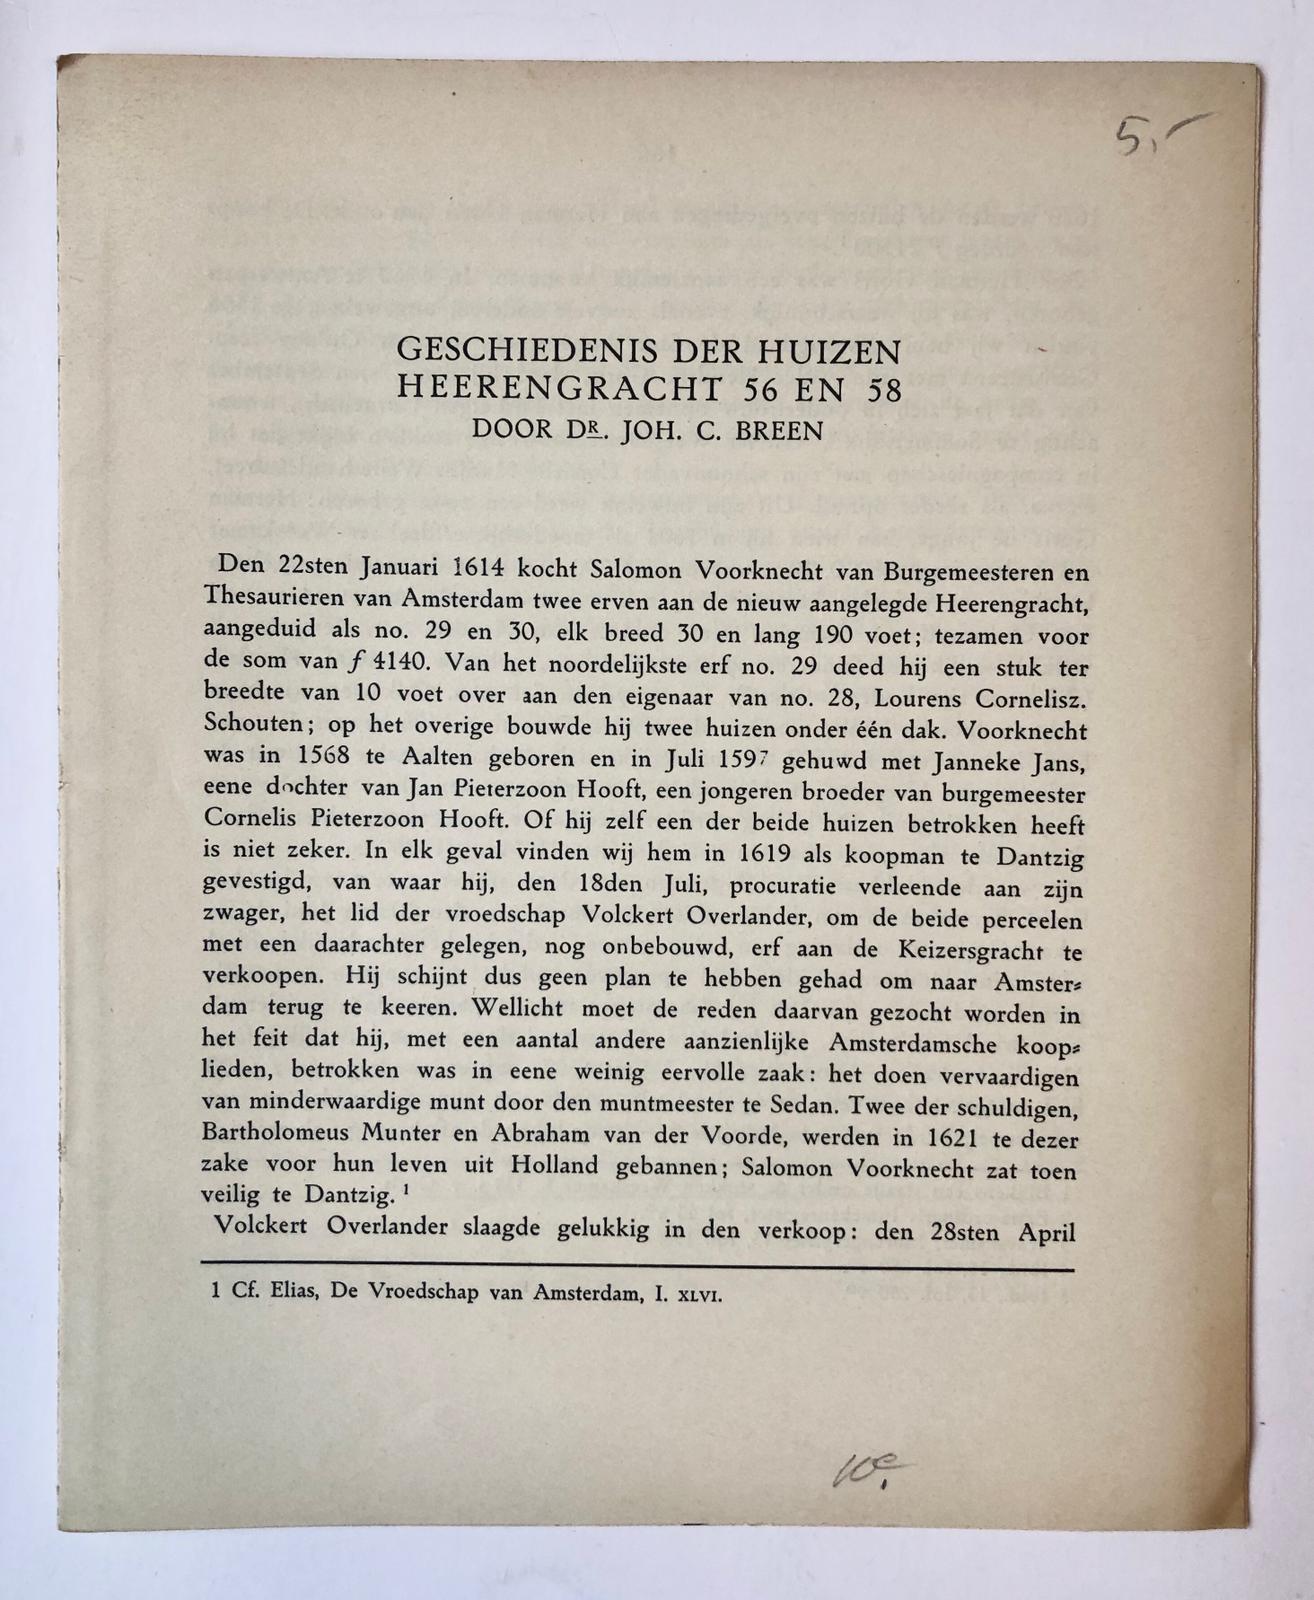 [Printed documents, Amsterdam houses] Collectie van 26 overdrukken (veelal uit Jaarb. Amstelodamum) van artikelen betr. de geschiedenis van Amsterdamse huizen. Gedrukt.